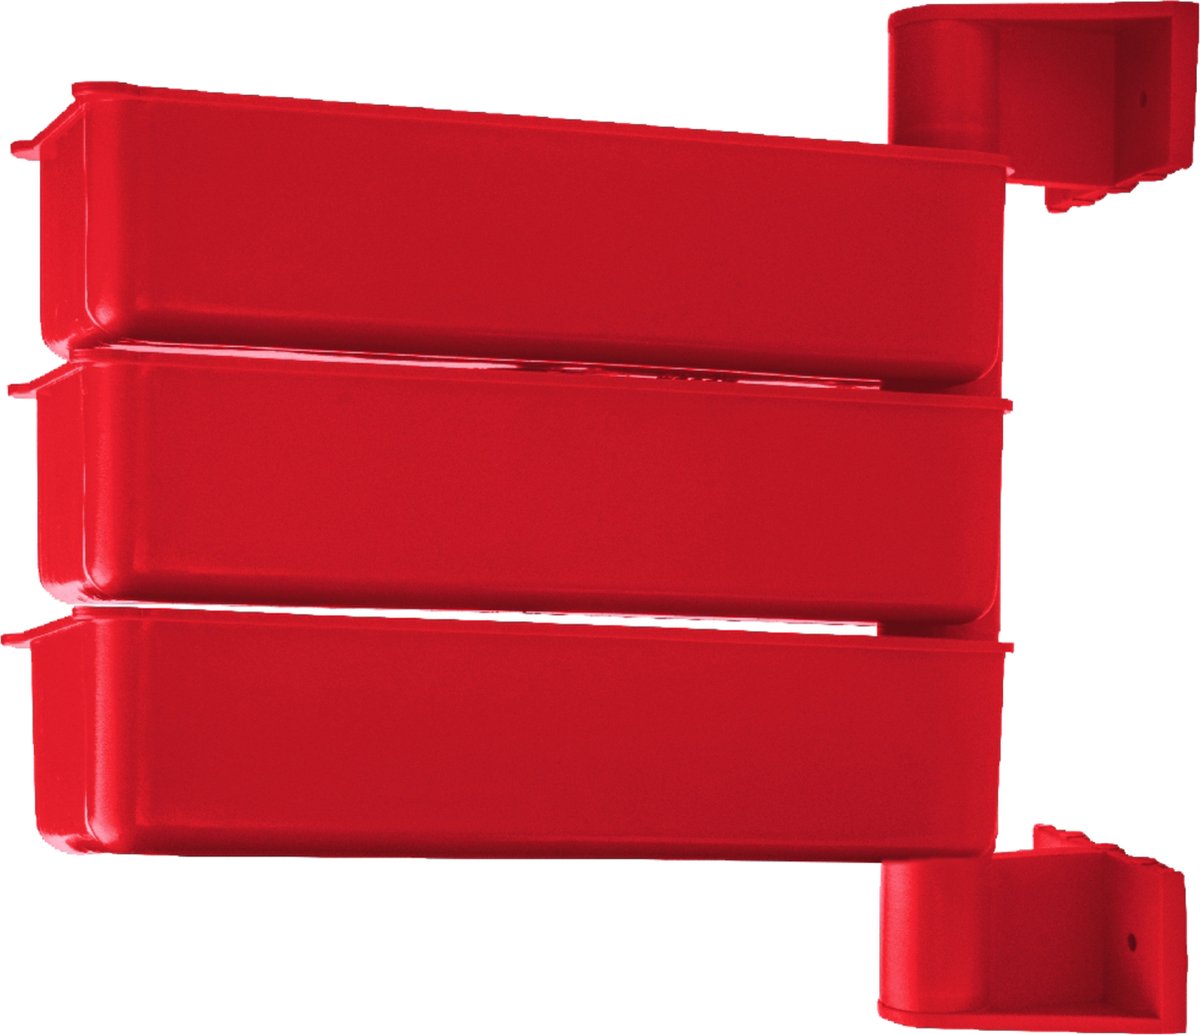 PIVOT - Set van 3 Roterende Opberg Containers | Polypropyleen | Rode Kleur -Organiseer